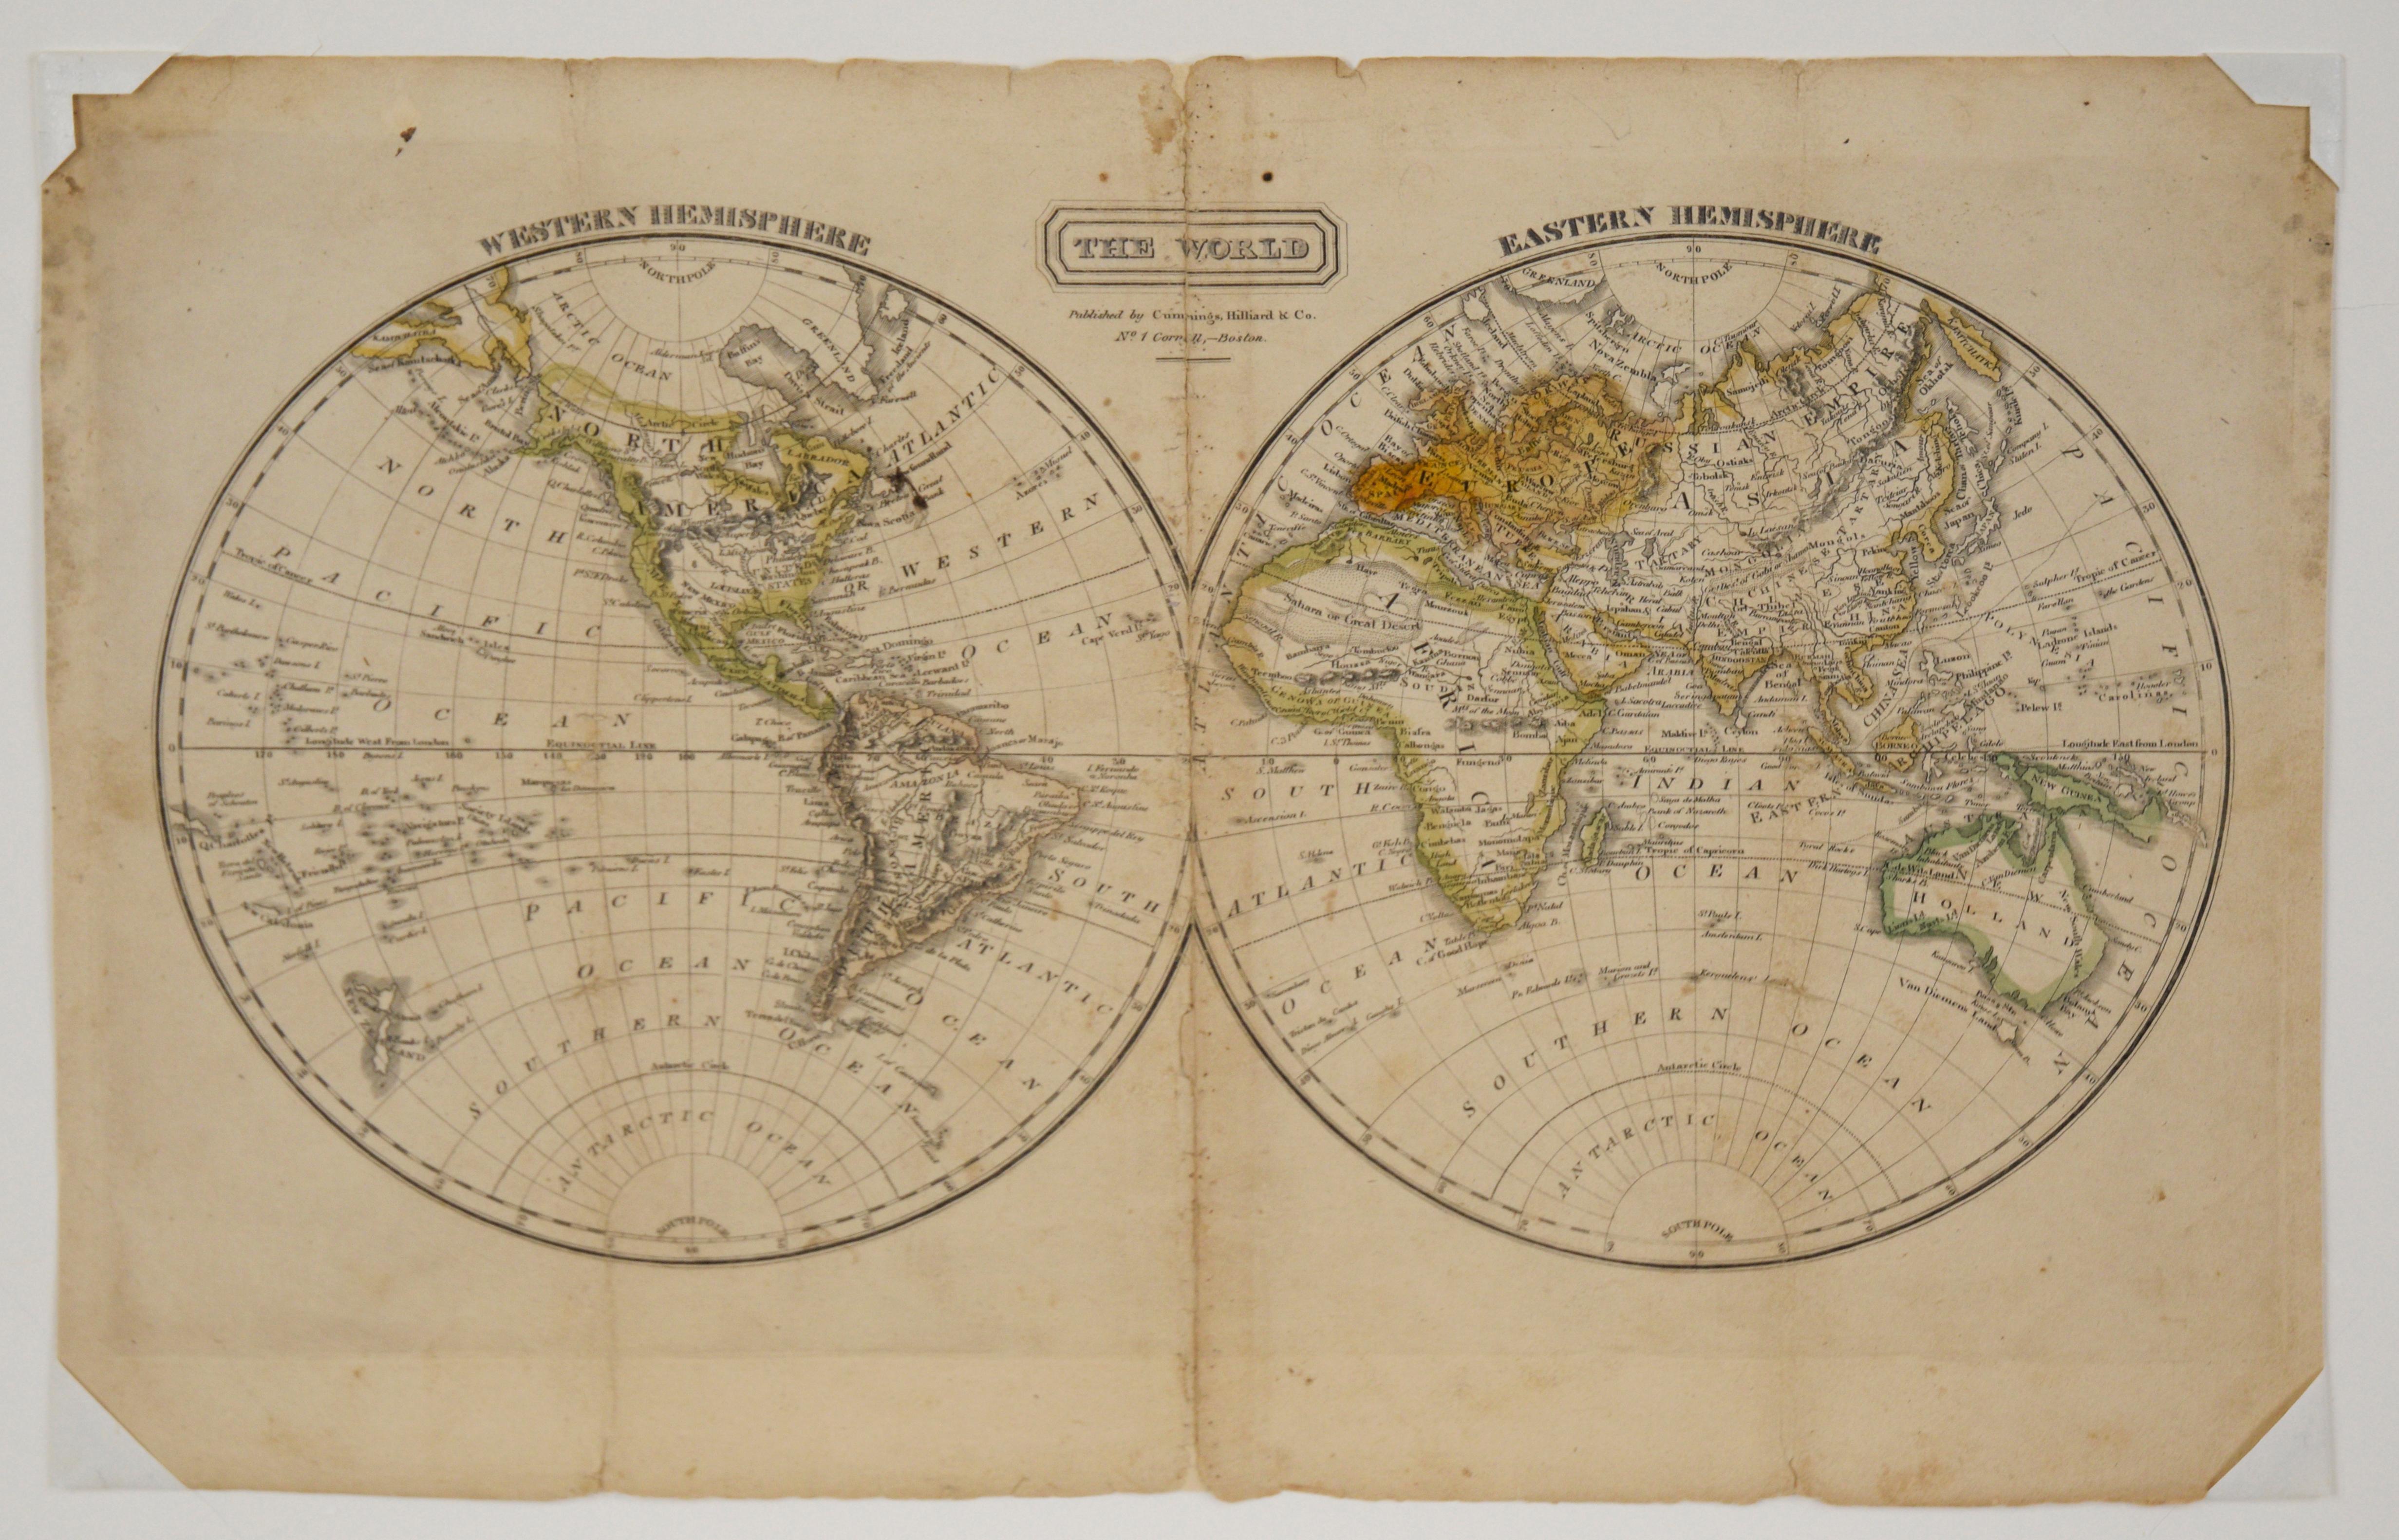 „The World“ Herausgegeben von Cummings & Hilliard, Nr. 1, Cornhill, Boston – Print von Jacob Abbot Cummings